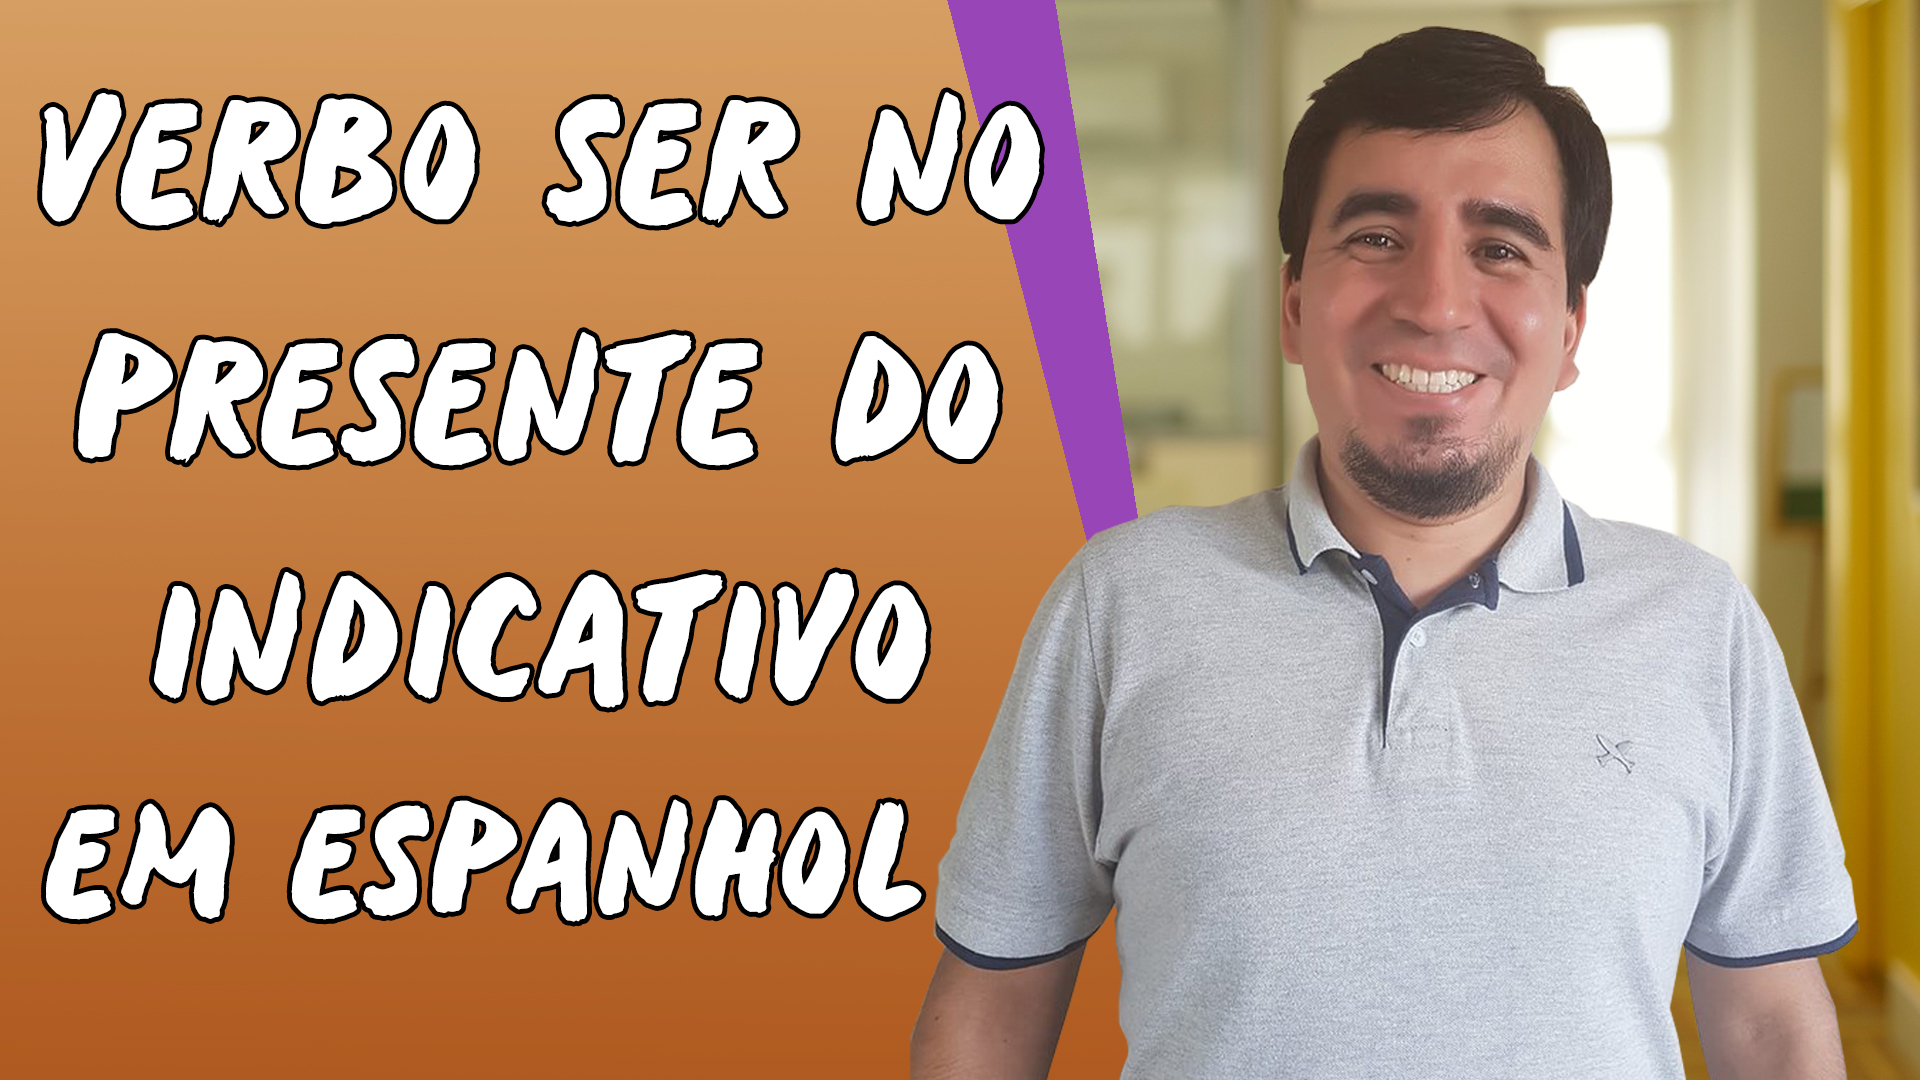 "Verbo Ser no Presente do Indicativo em Espanhol" escrito sobre fundo laranja ao lado da imagem do professor